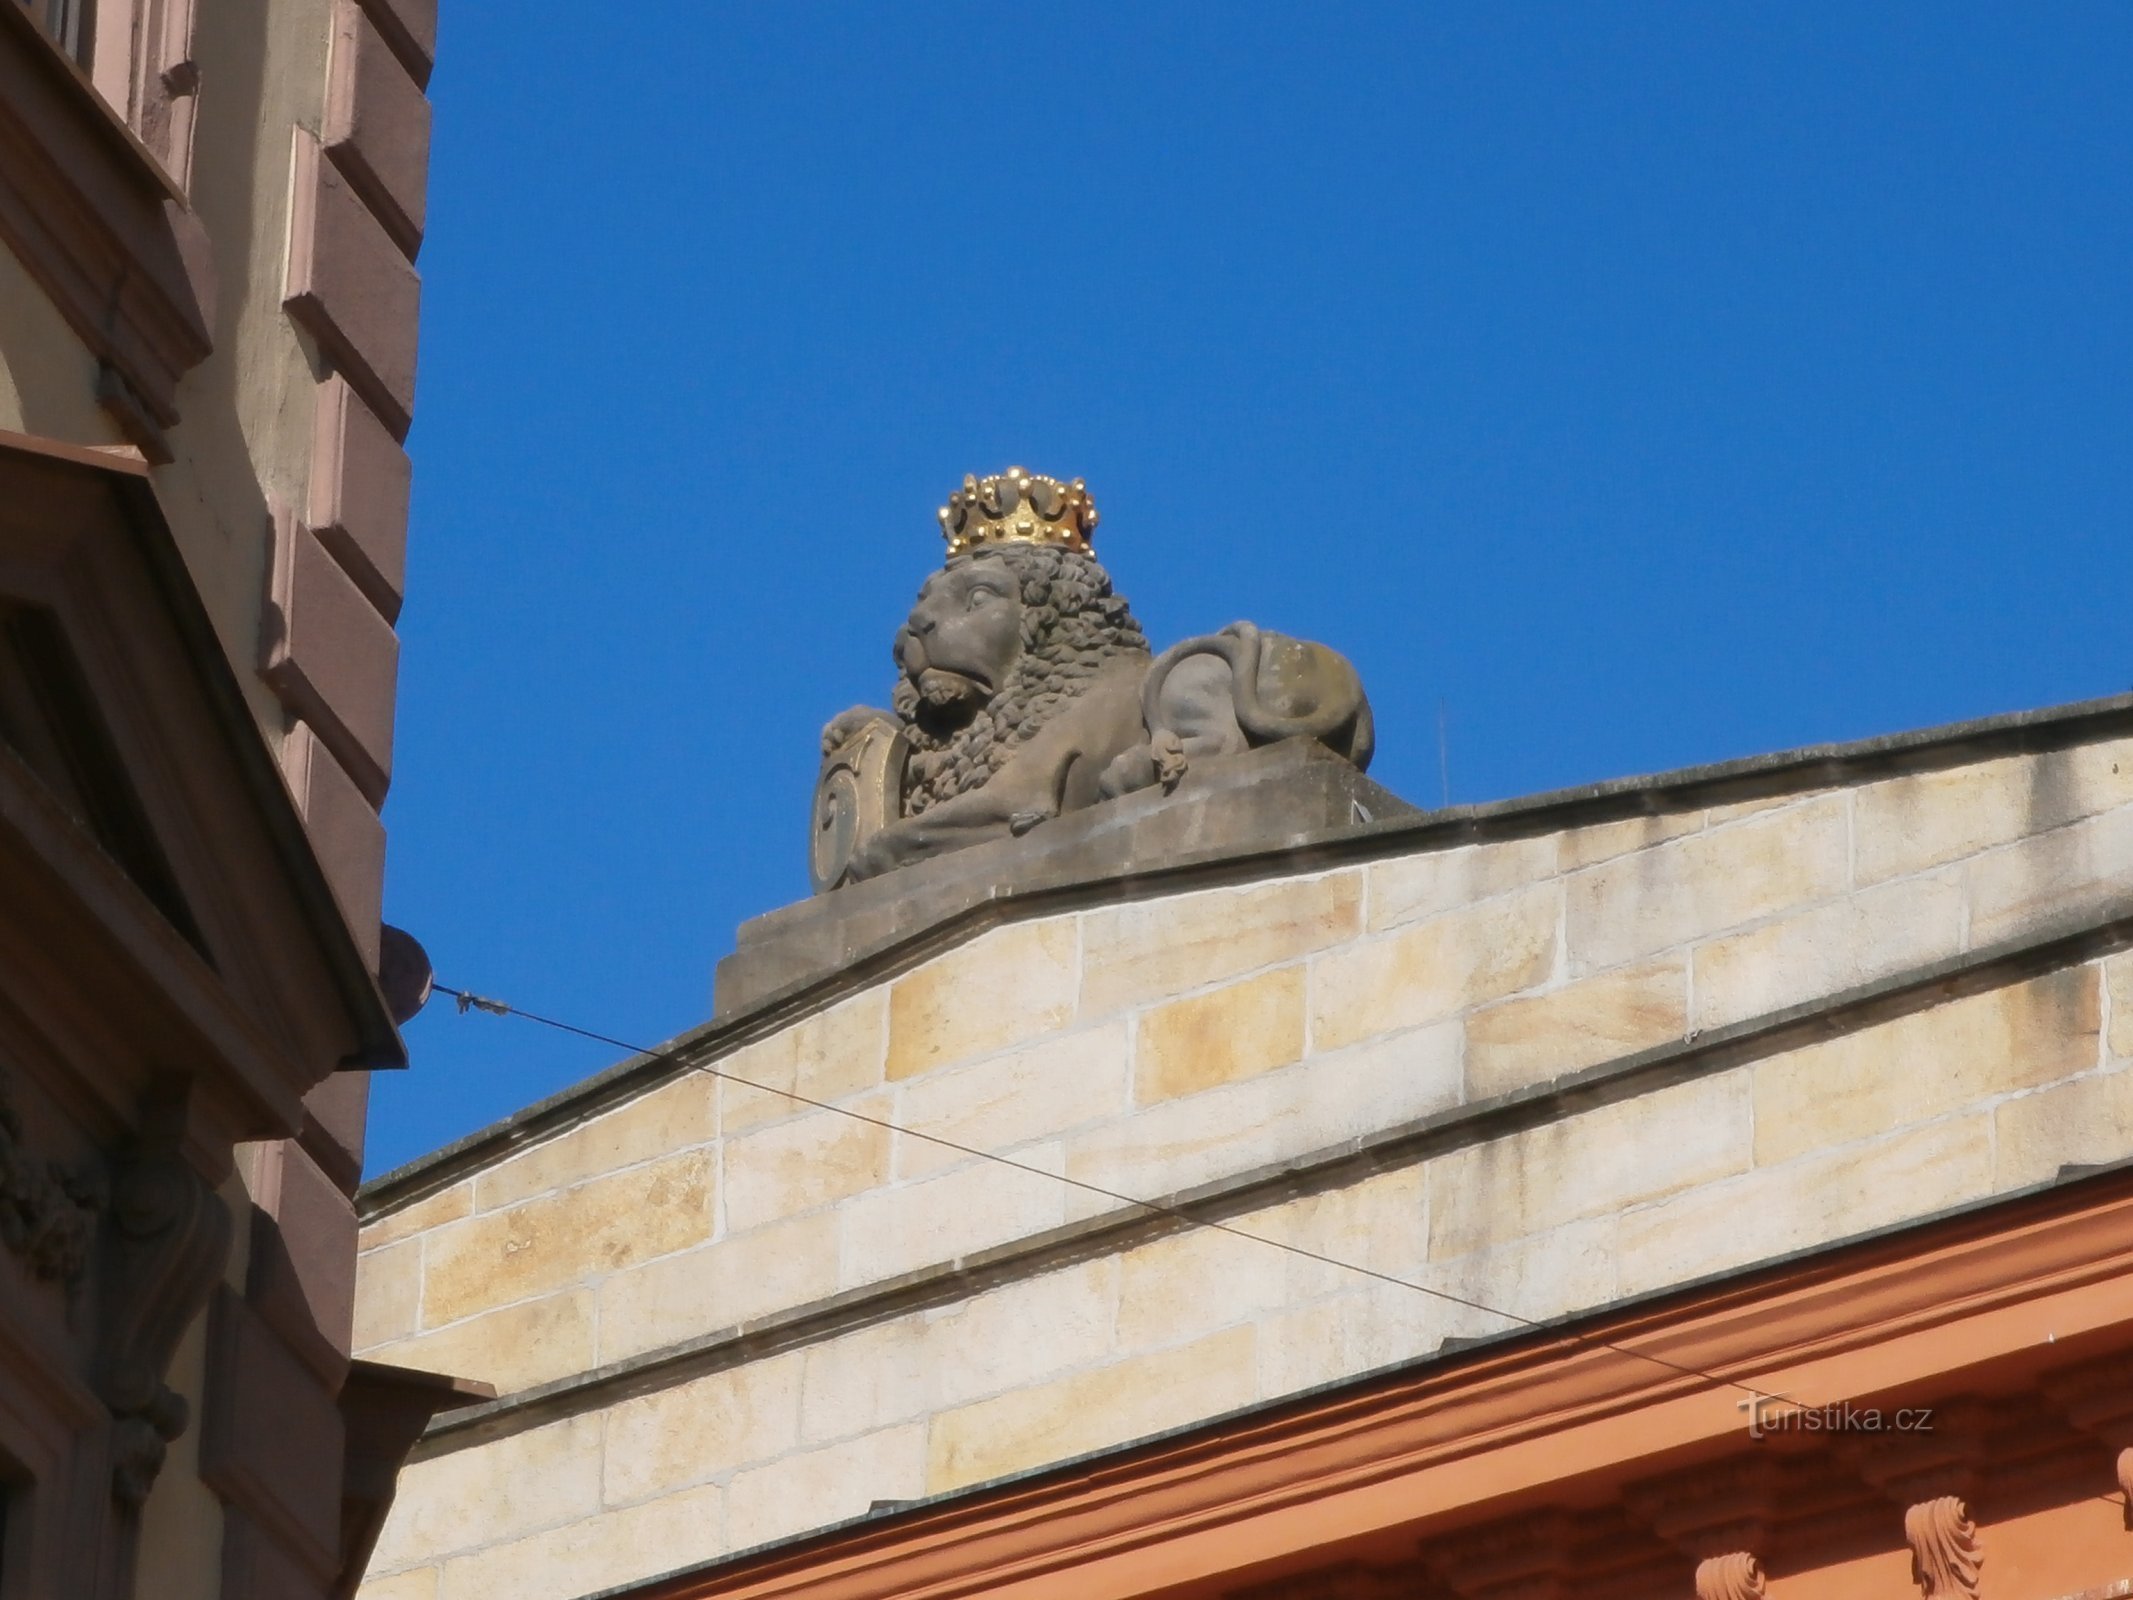 230 号狮子雕像 (Hradec Králové, 18.6.2016/XNUMX/XNUMX)